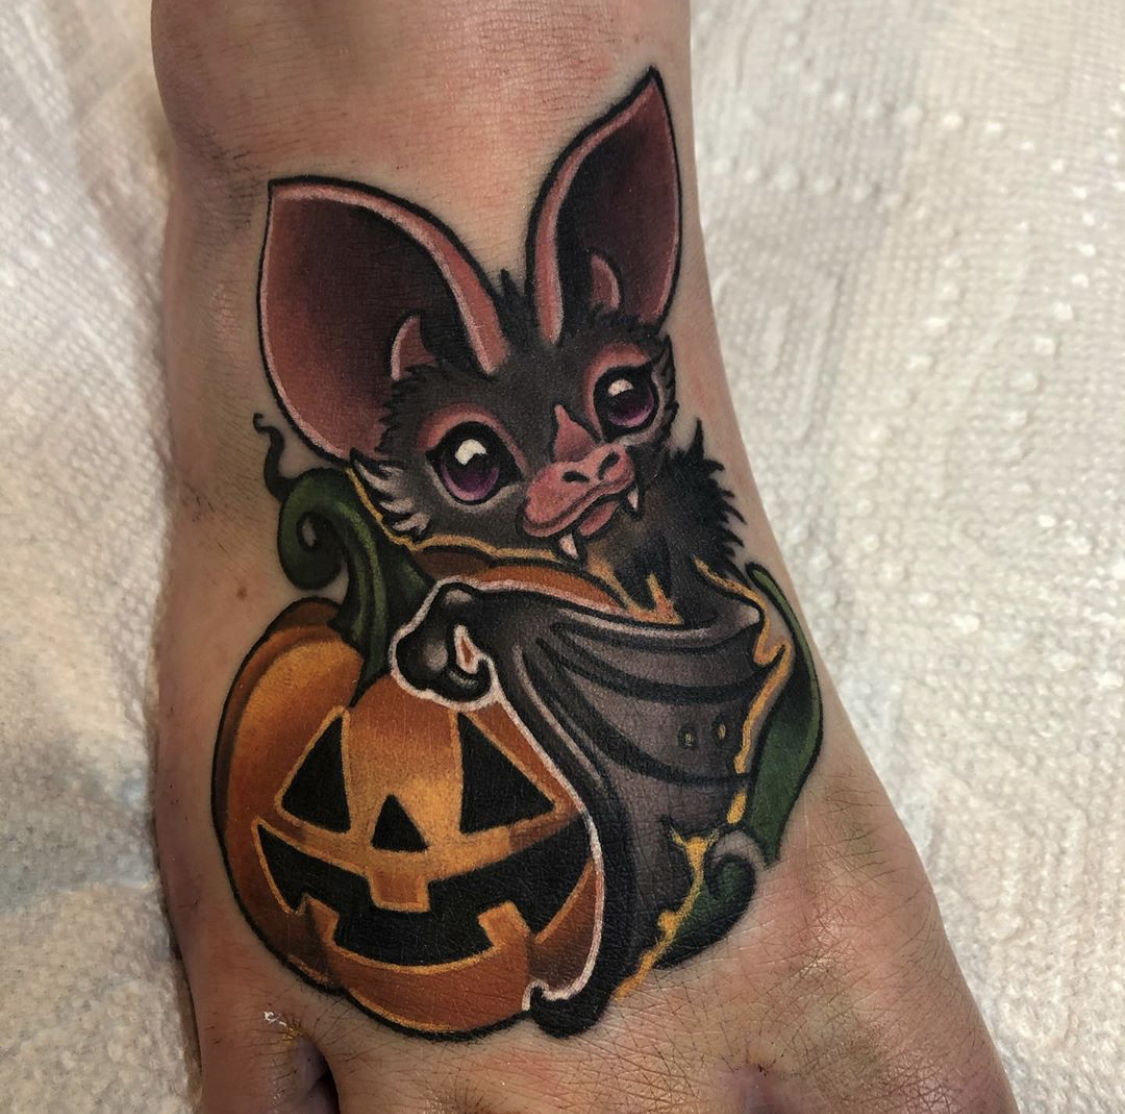 Bat and pumpkin tattoo